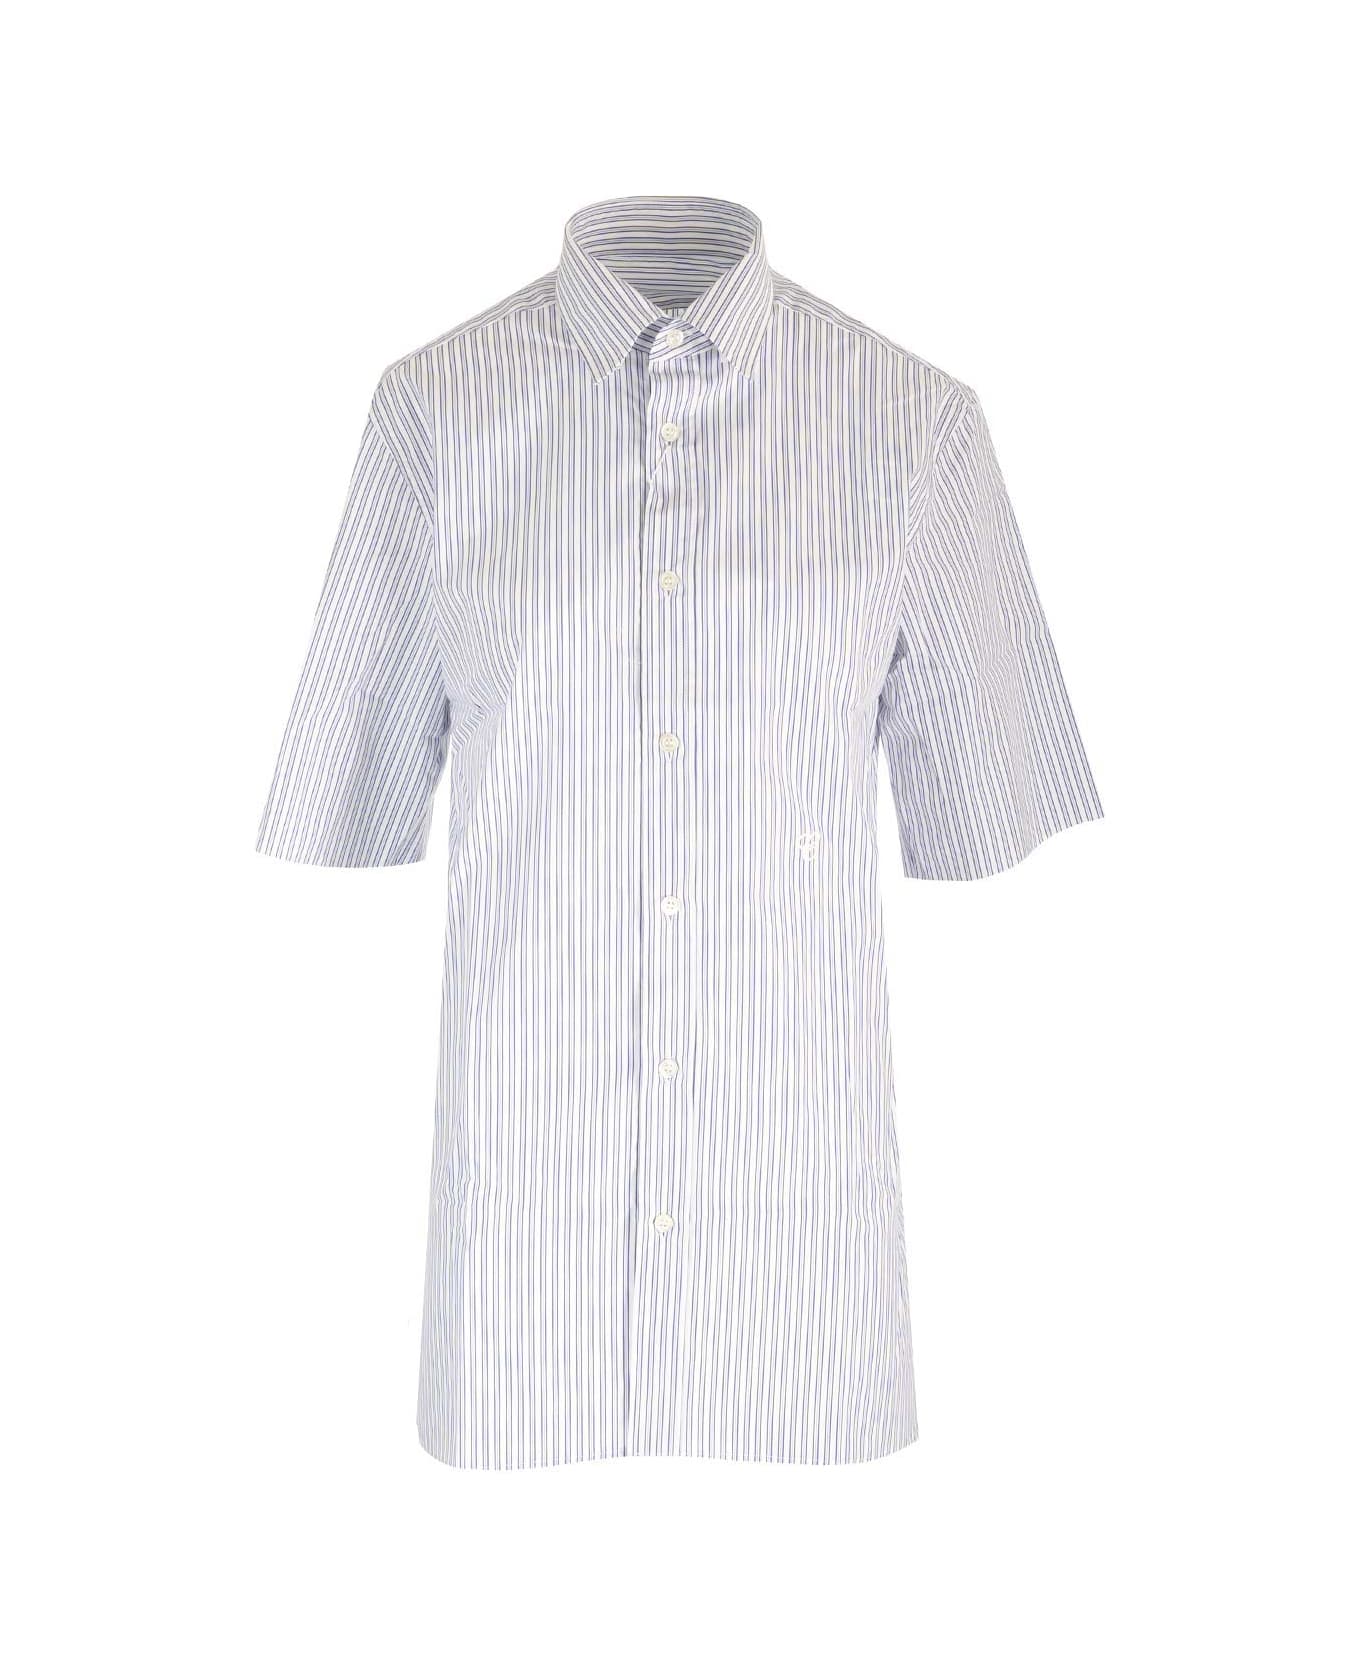 Maison Margiela Striped Shirt - BLUE WHITE STRIPES シャツ